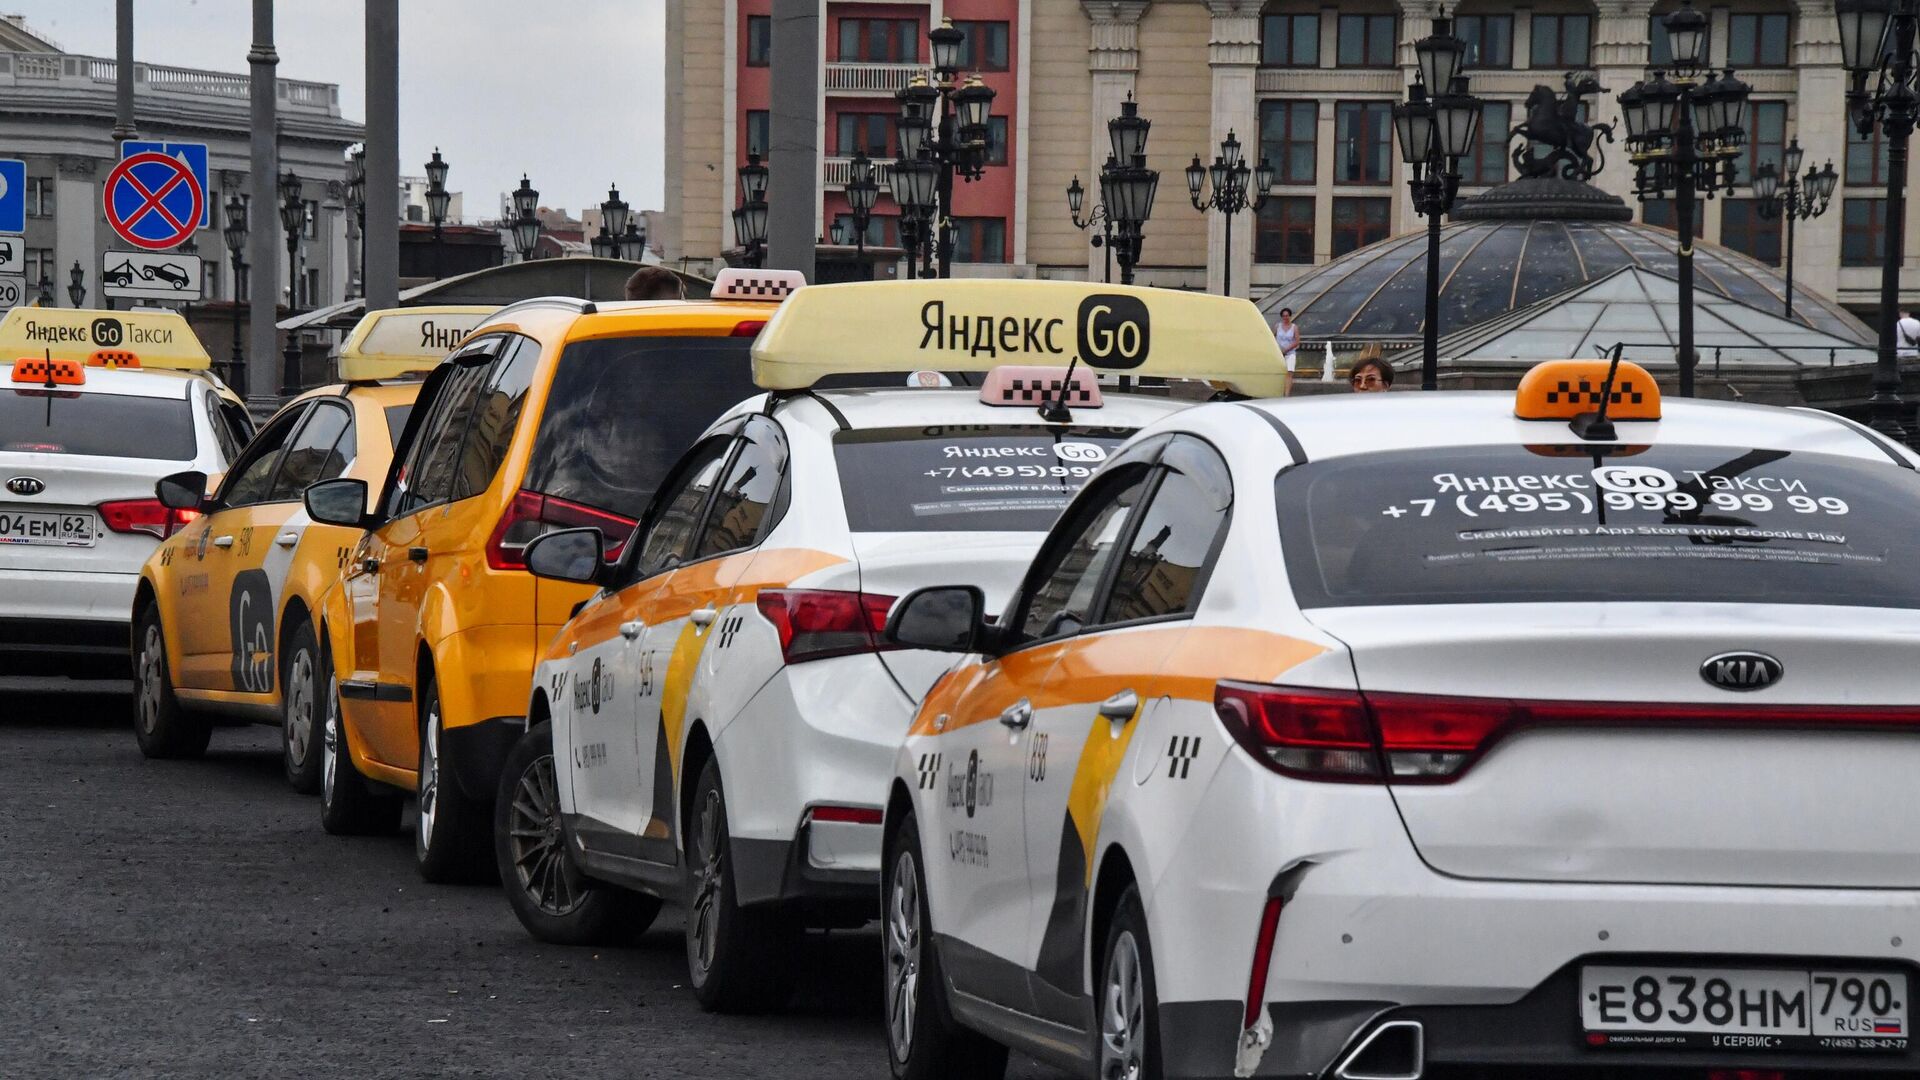 Яндекс такси москва